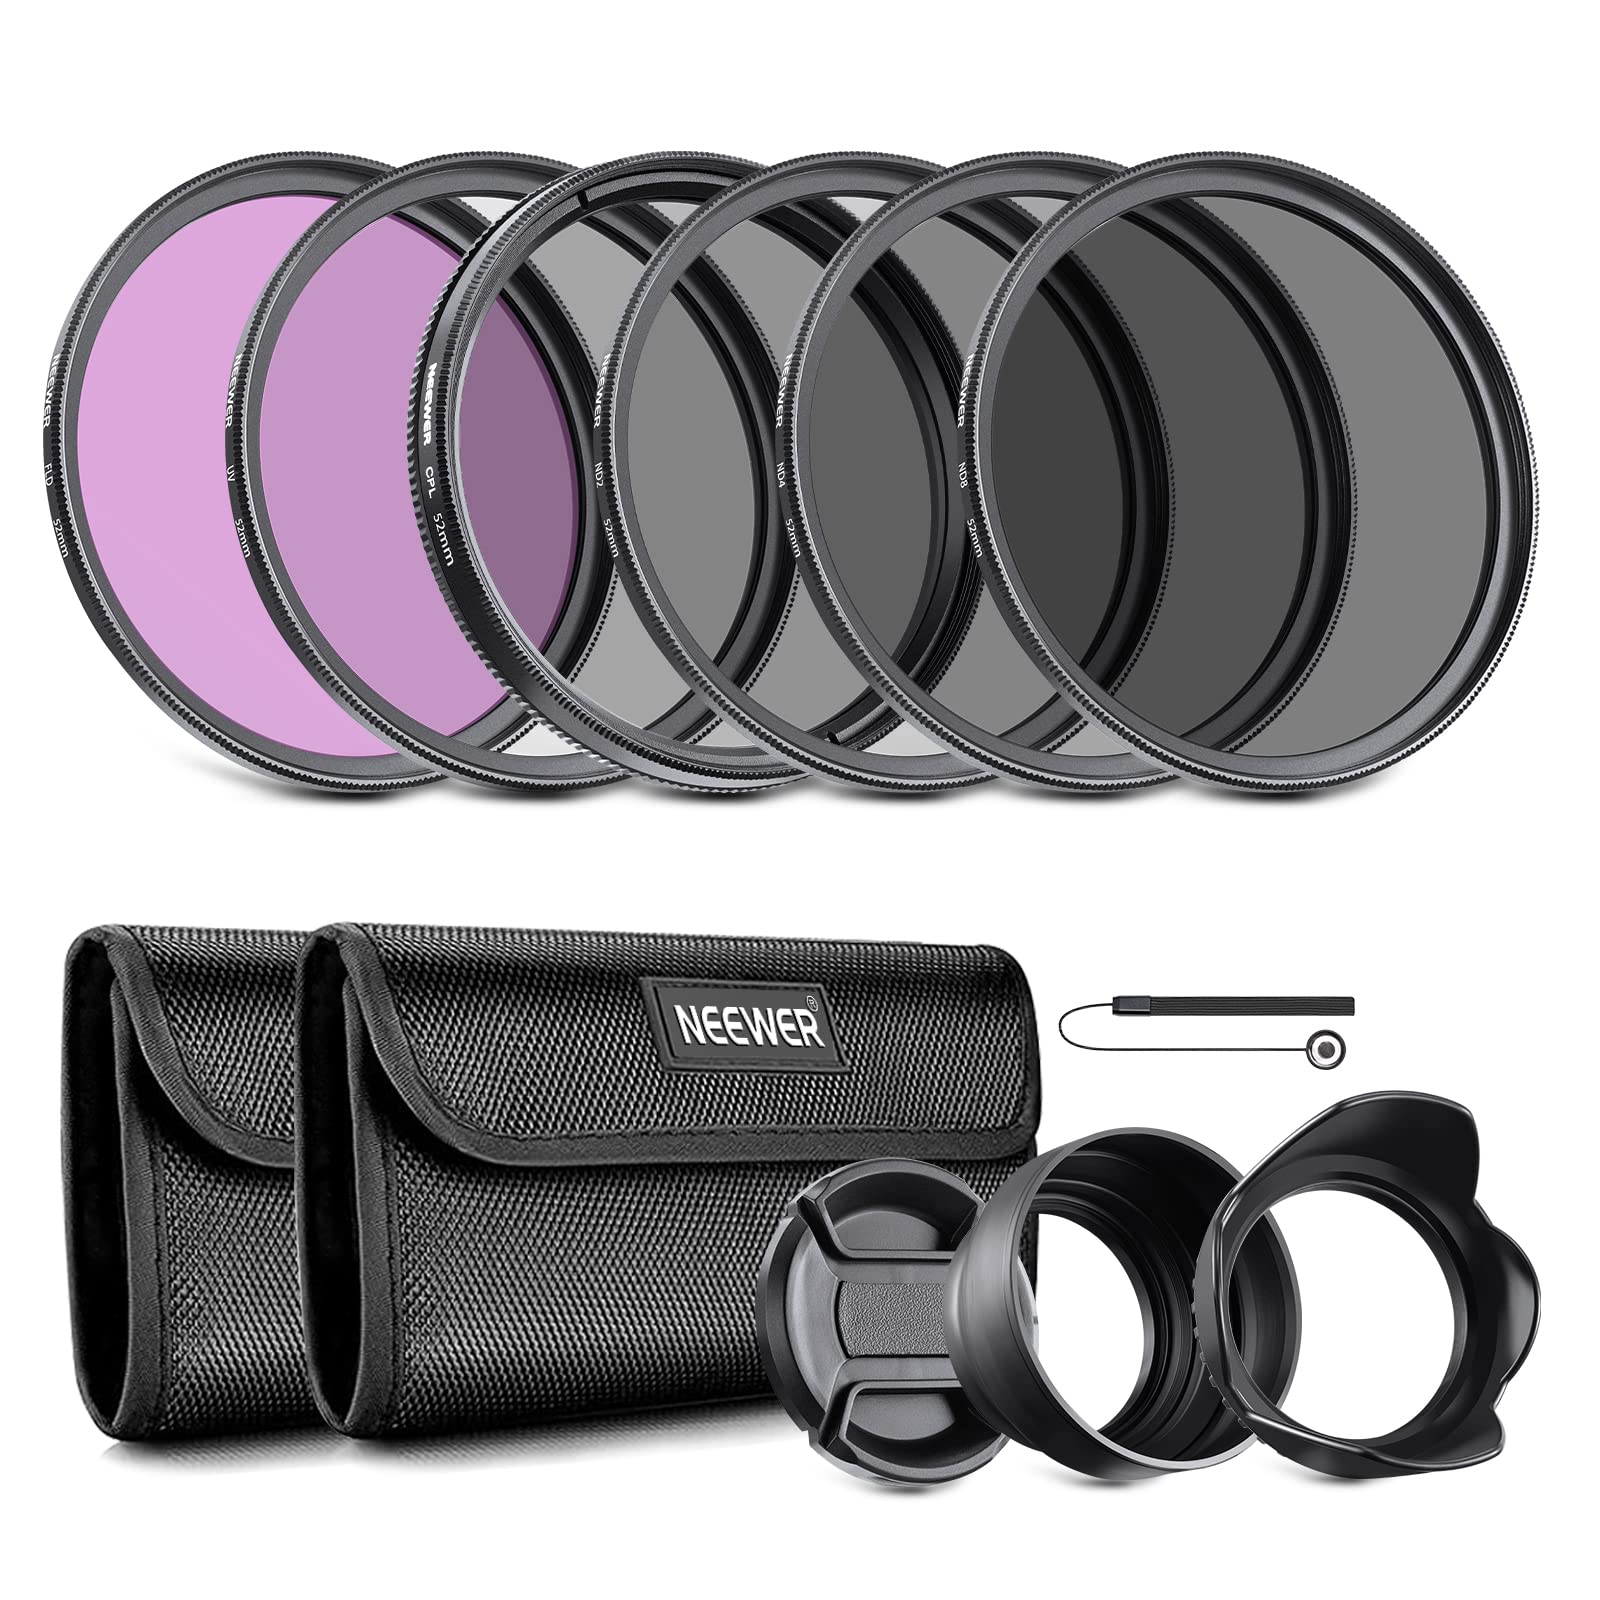 Magnifique Neewer 52mm Objectif Filtre Kit d´Accessoire pour Nikon D7100 D7000 D5200 D5100 D5000 D3300 D3200 D3100 D3000 D90 D80 Appareils Photo Reflex Numériques Z3GYQaCYi en vente